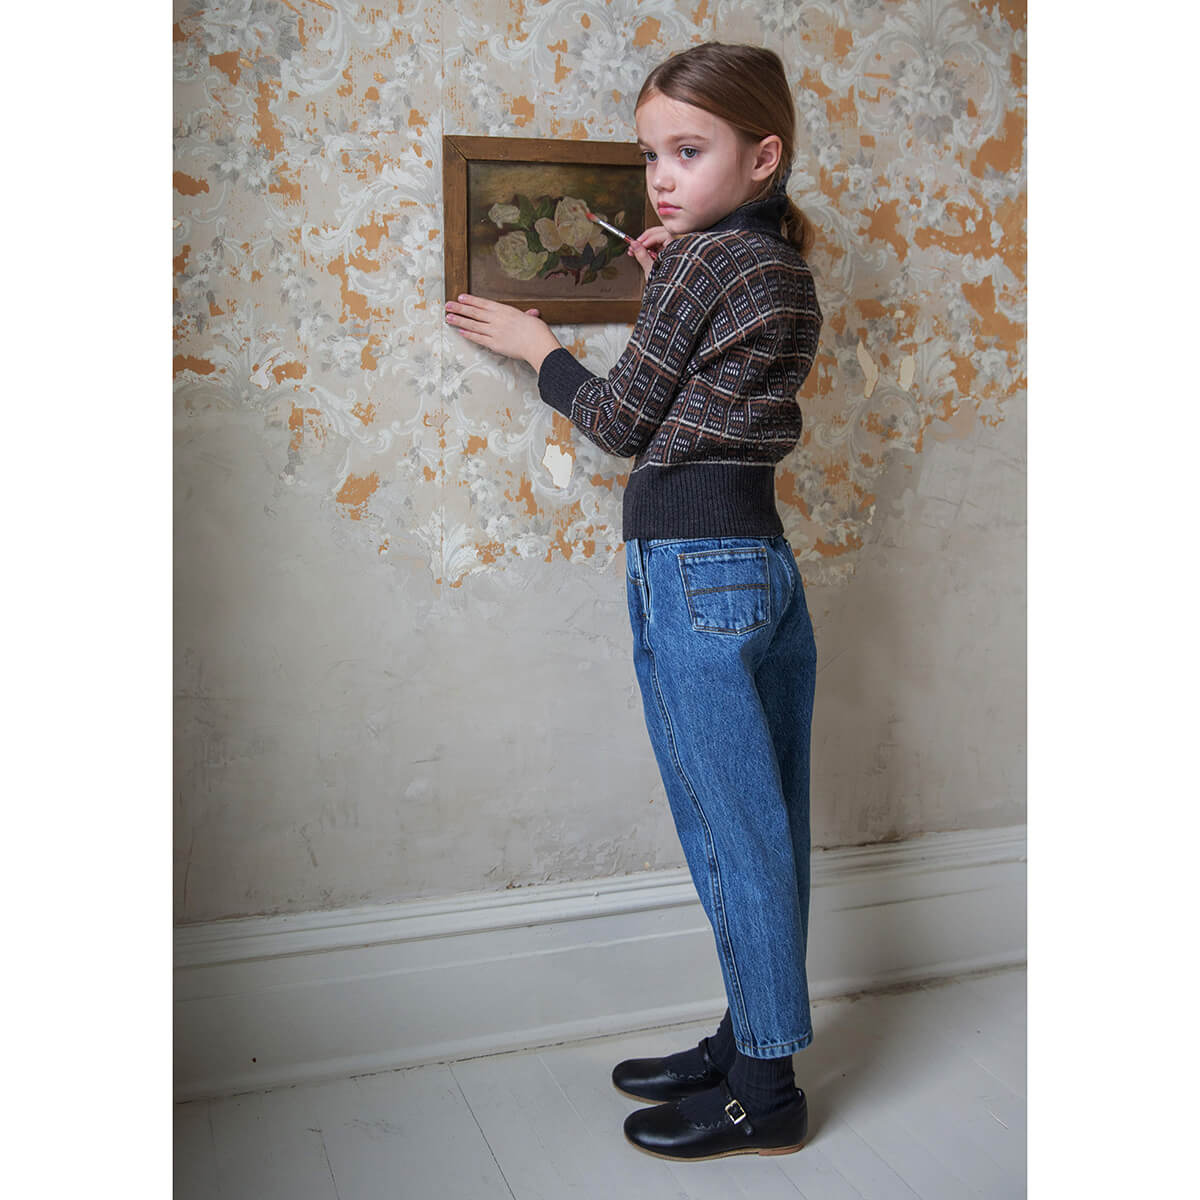 Vintage Jean in Blue Denim by Soor Ploom – Junior Edition